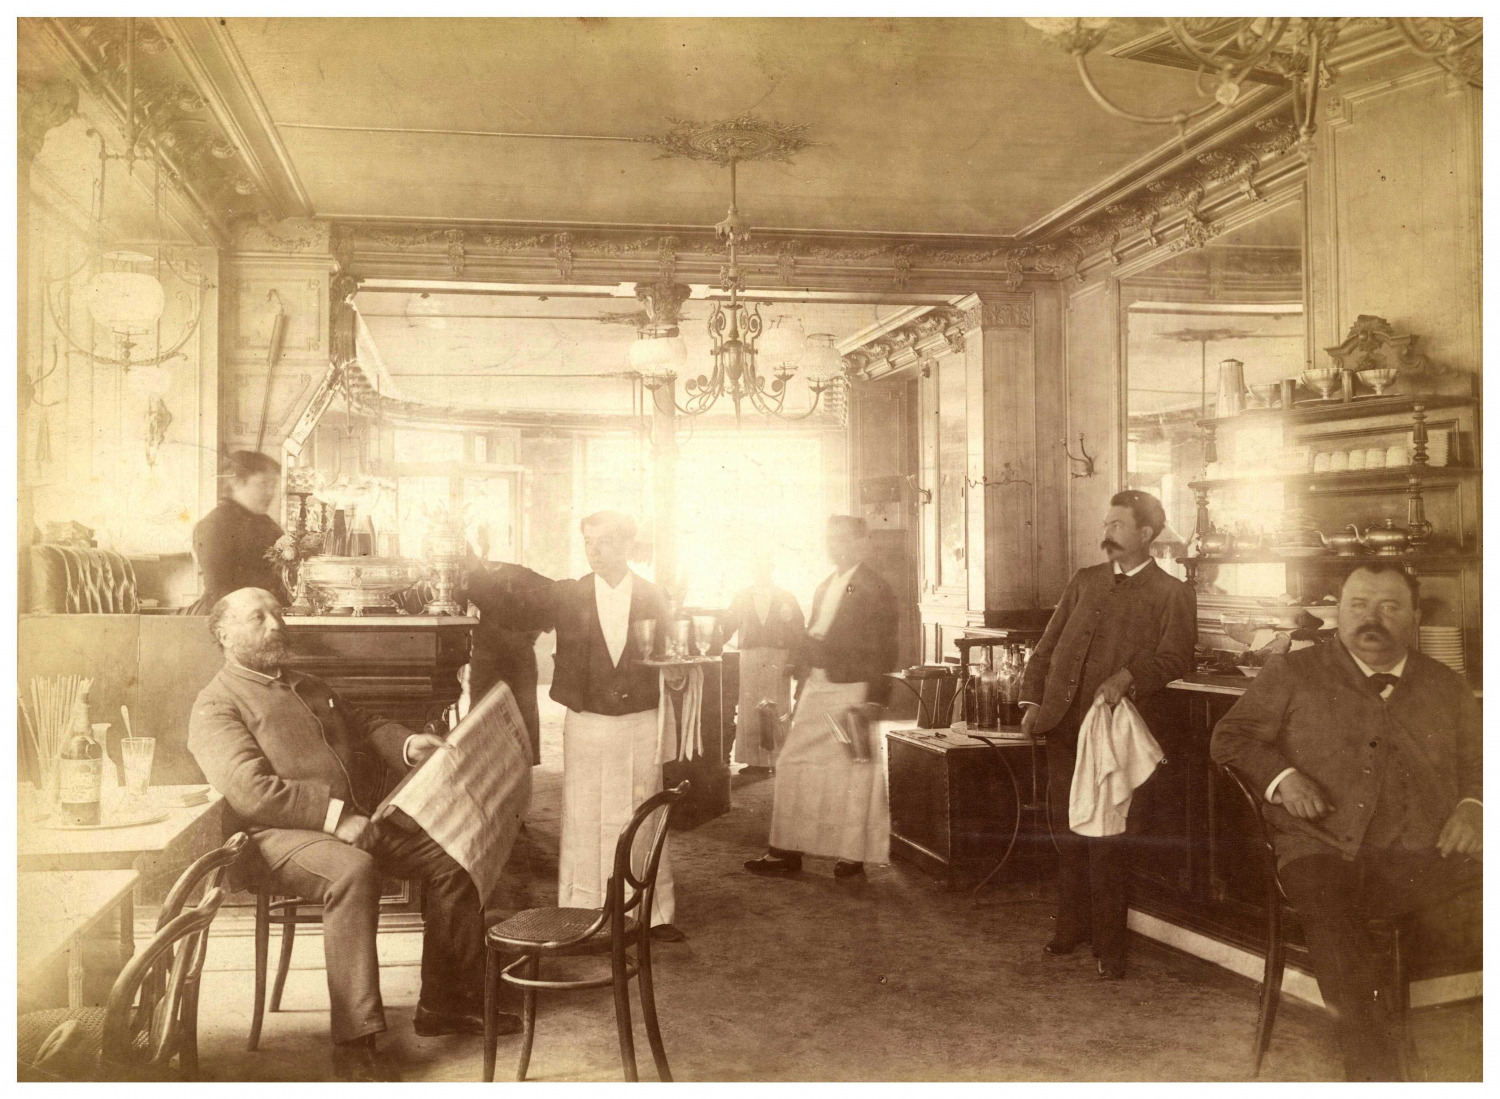 Paris, Café, Place de l'Observatoire Vintage Print, Albumin Print  